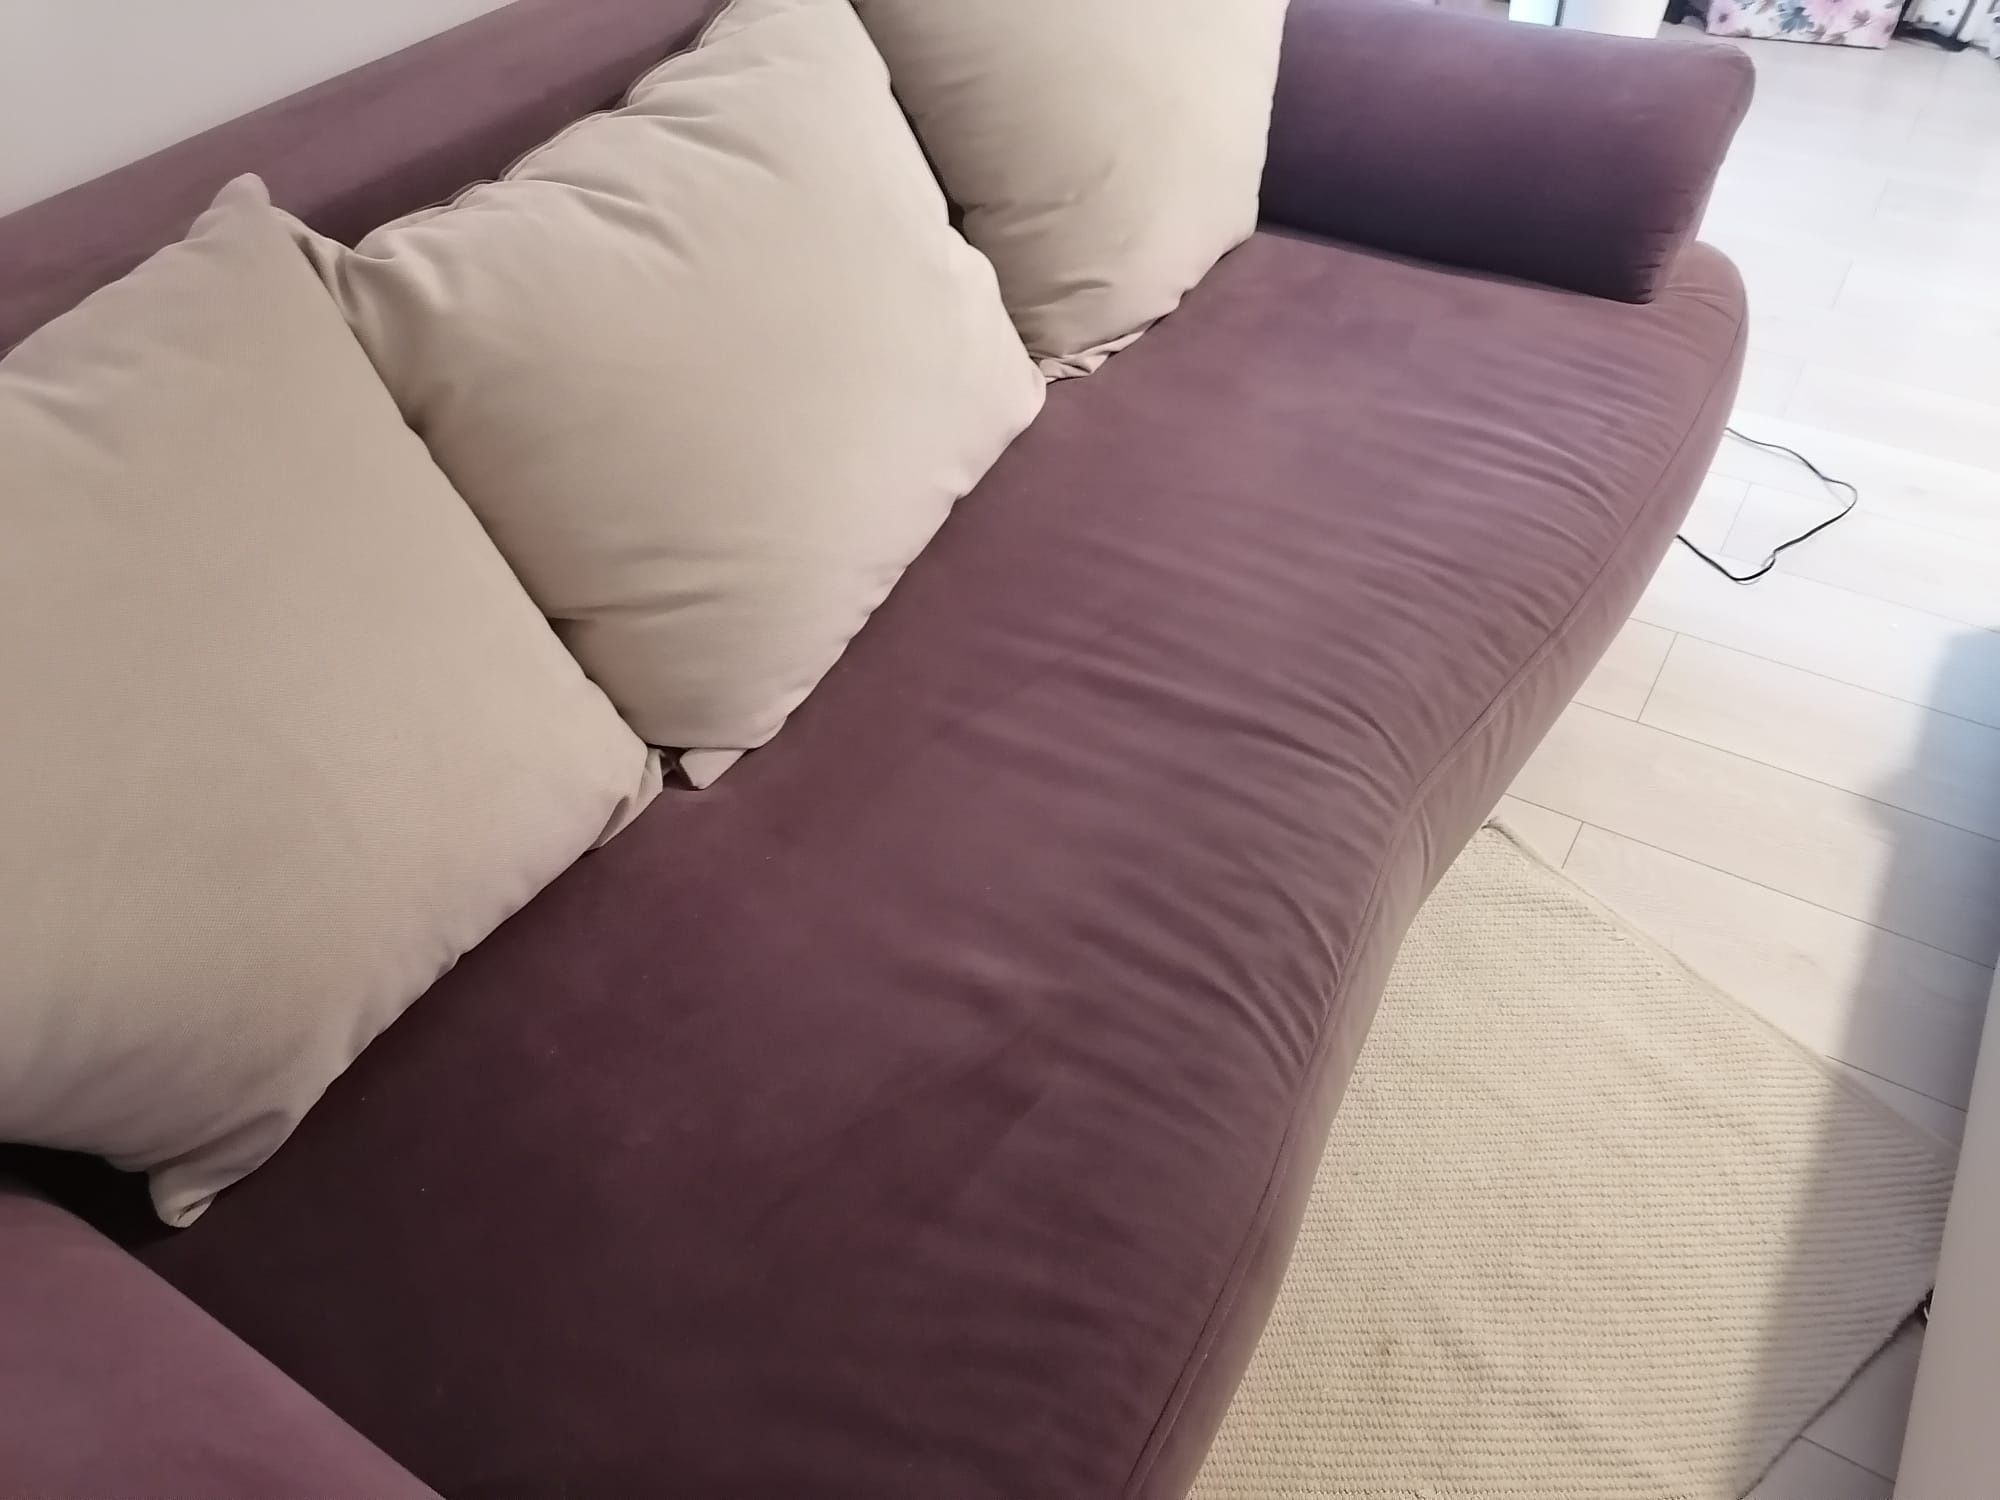 De vânzare pat de o persoana și o canapea în stare foarte buna